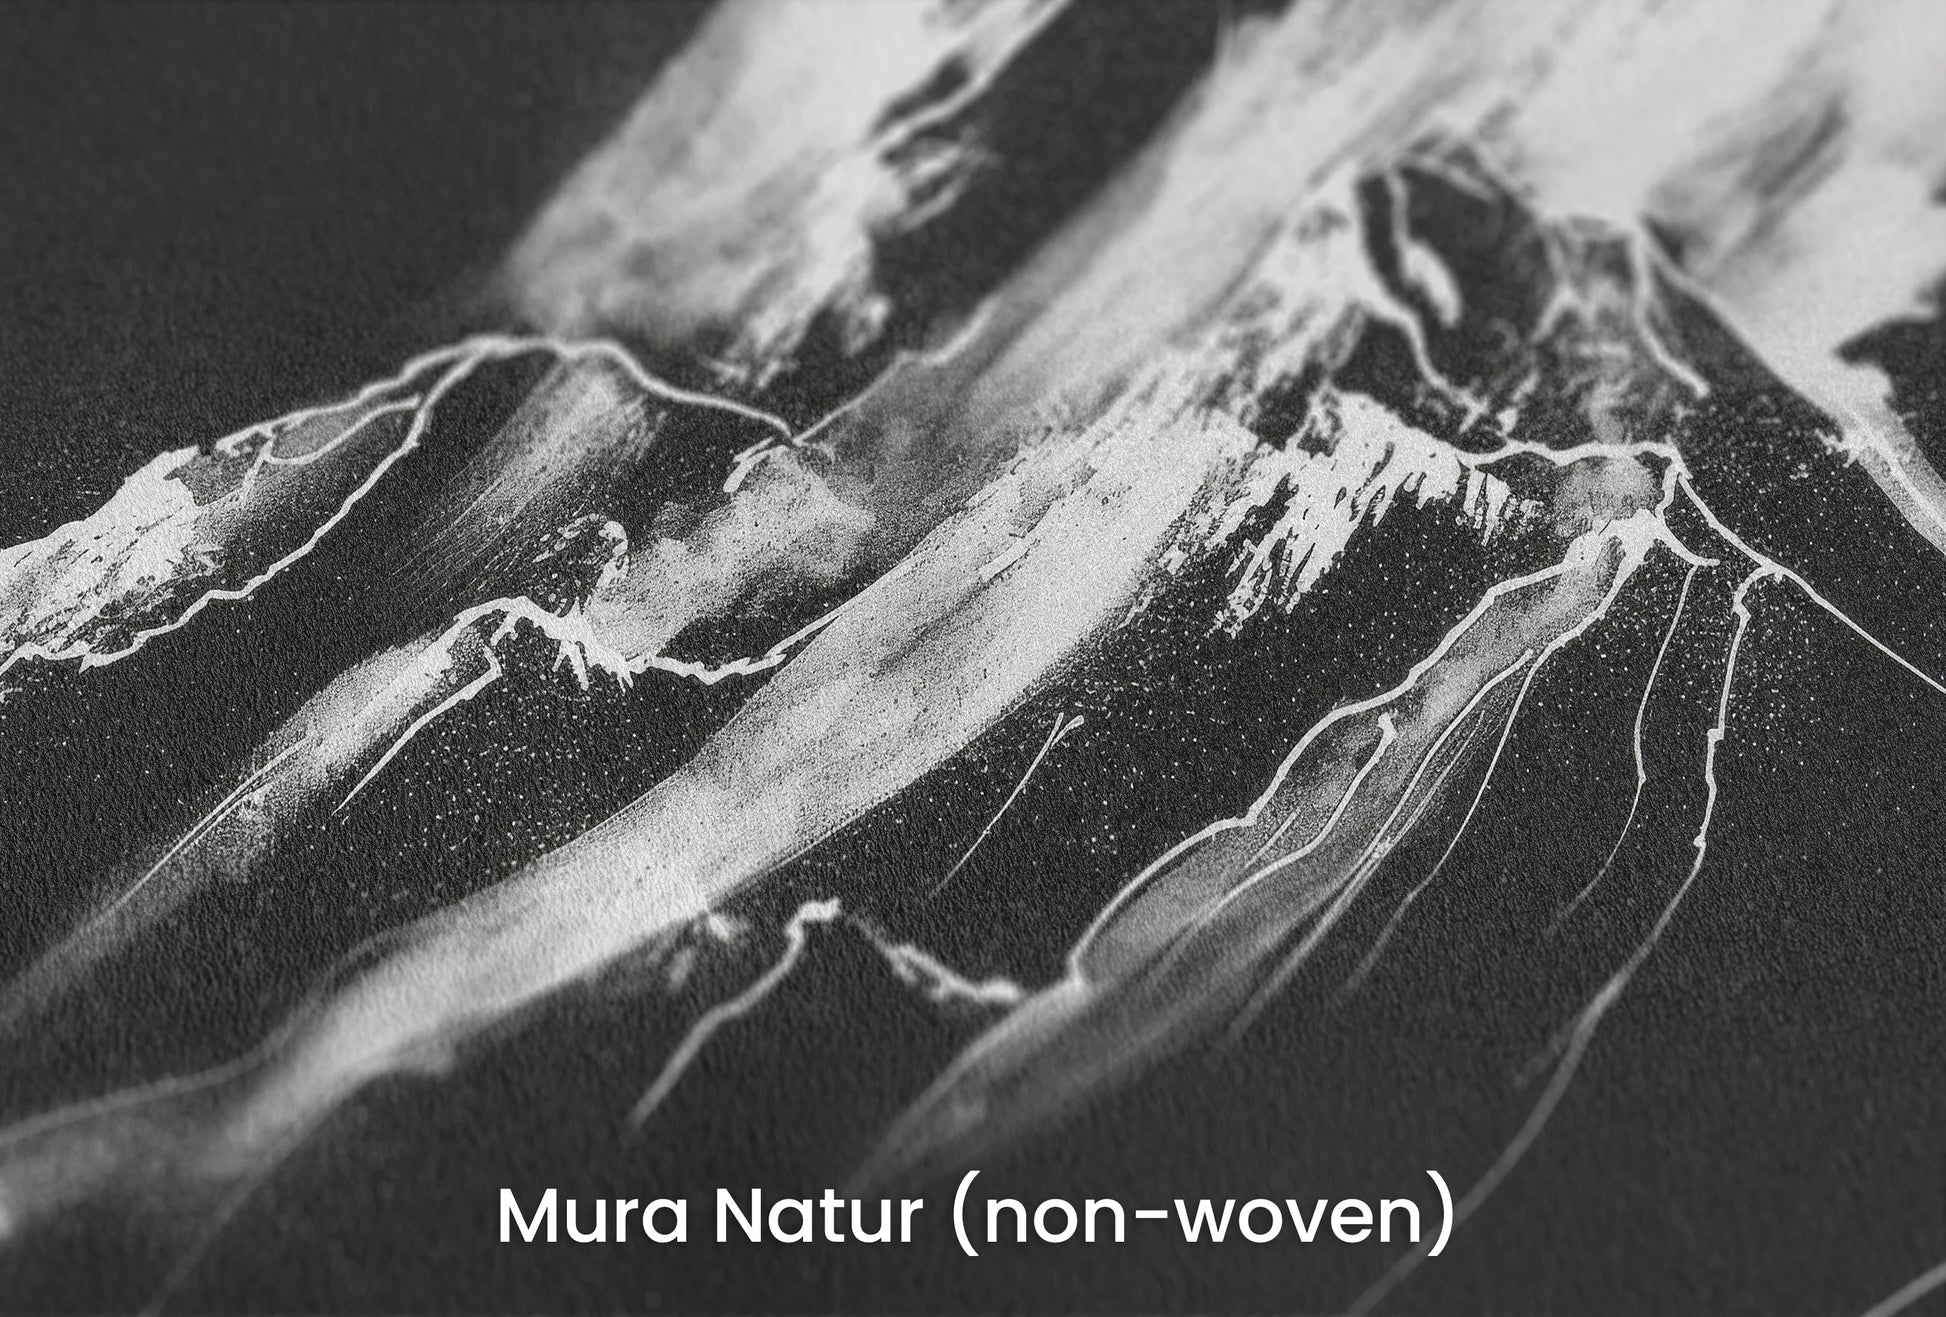 Zbliżenie na artystyczną fototapetę o nazwie Monochrome Majesty na podłożu Mura Natur (non-woven) - naturalne i ekologiczne podłoże.